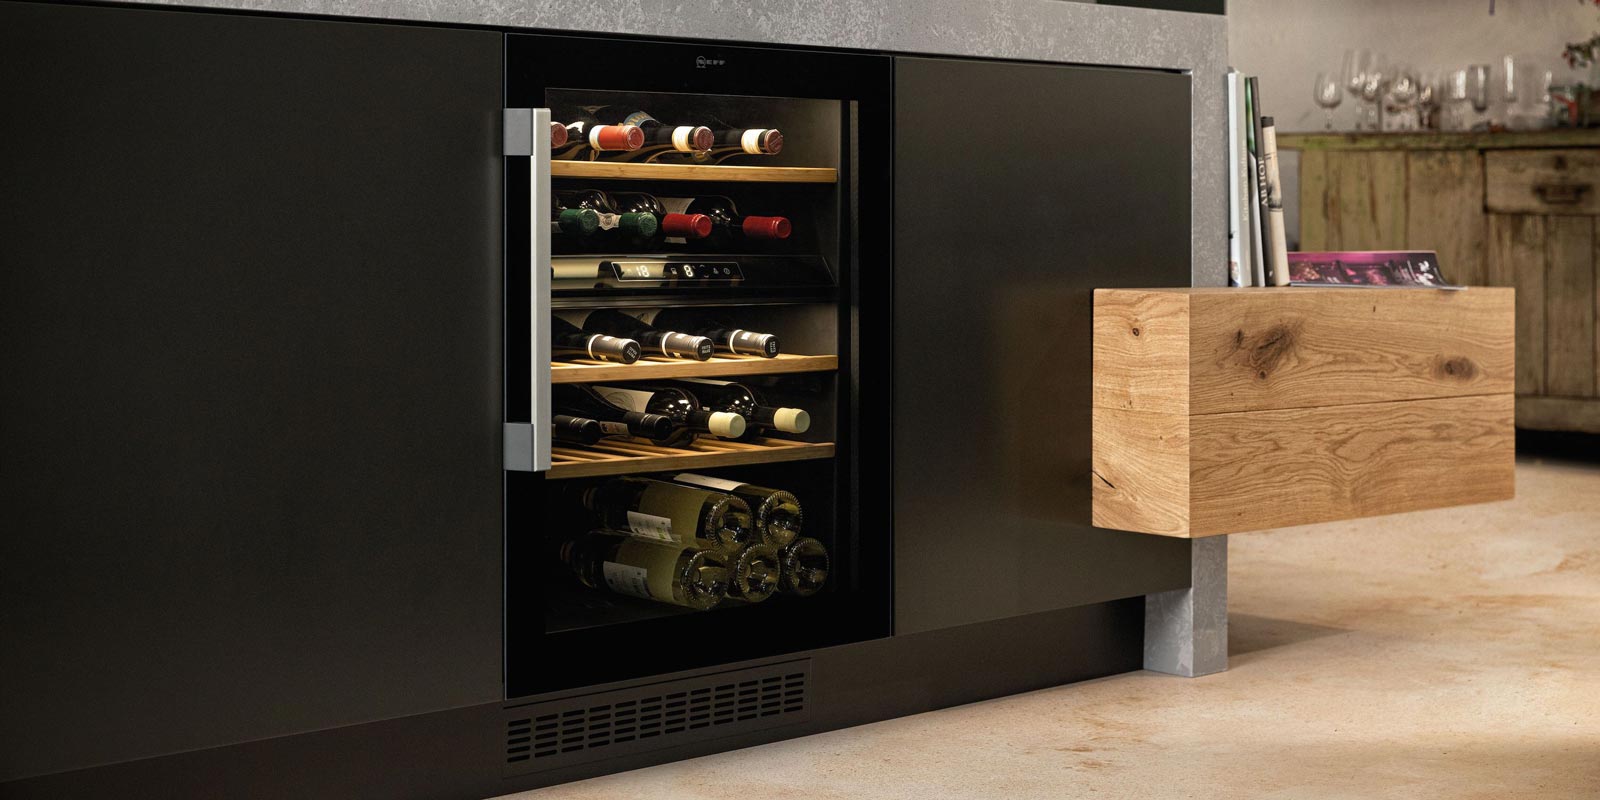 Cantinette o frigocantina: foto, misure e prezzi dei frigoriferi per il vino  - Cose di Casa